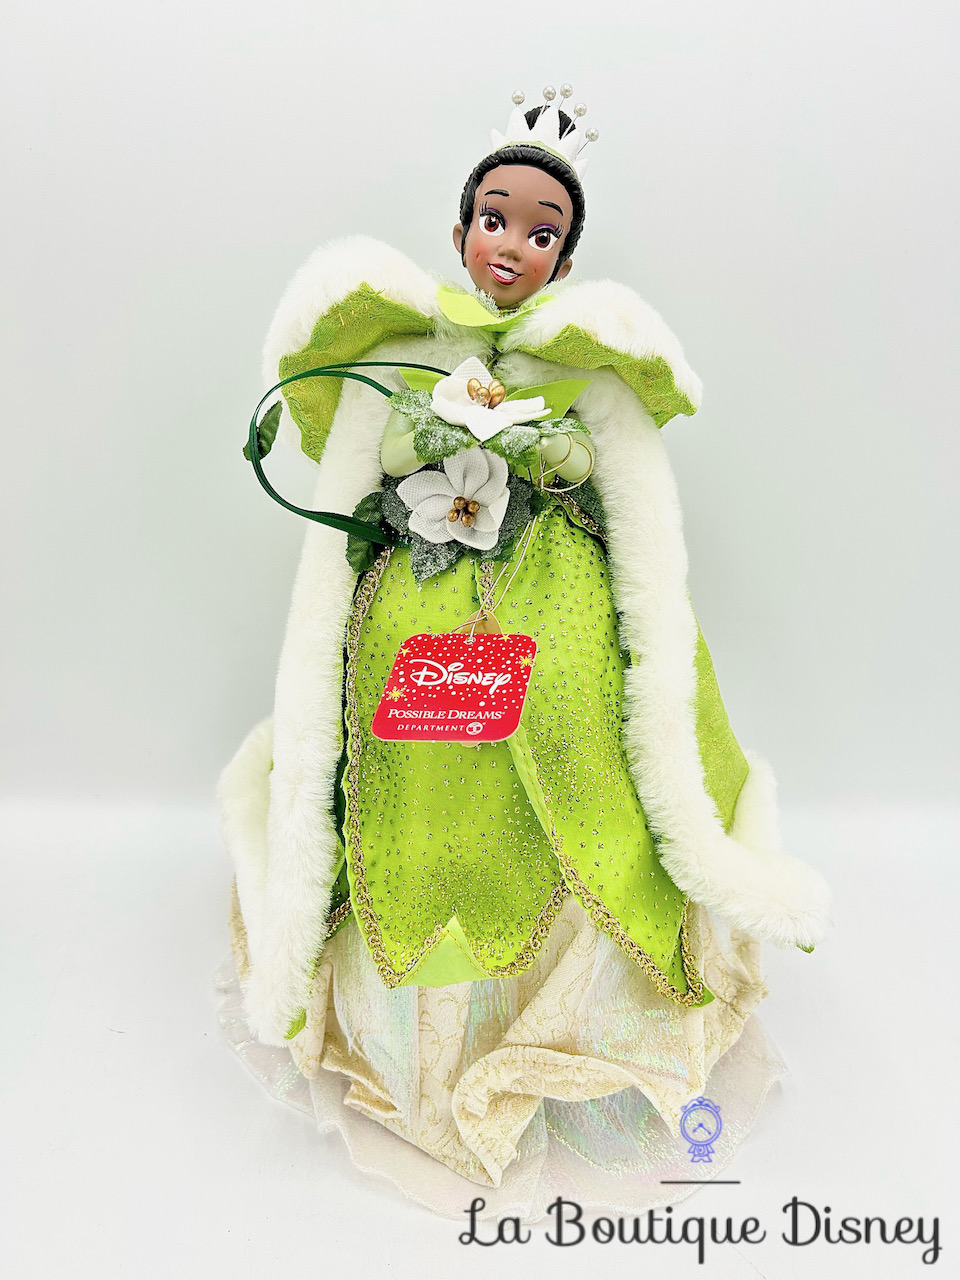 Décoration Noël Haut Sapin Tiana Disney Possible Dreams Départment 56 La princesse et la grenouille cime arbre